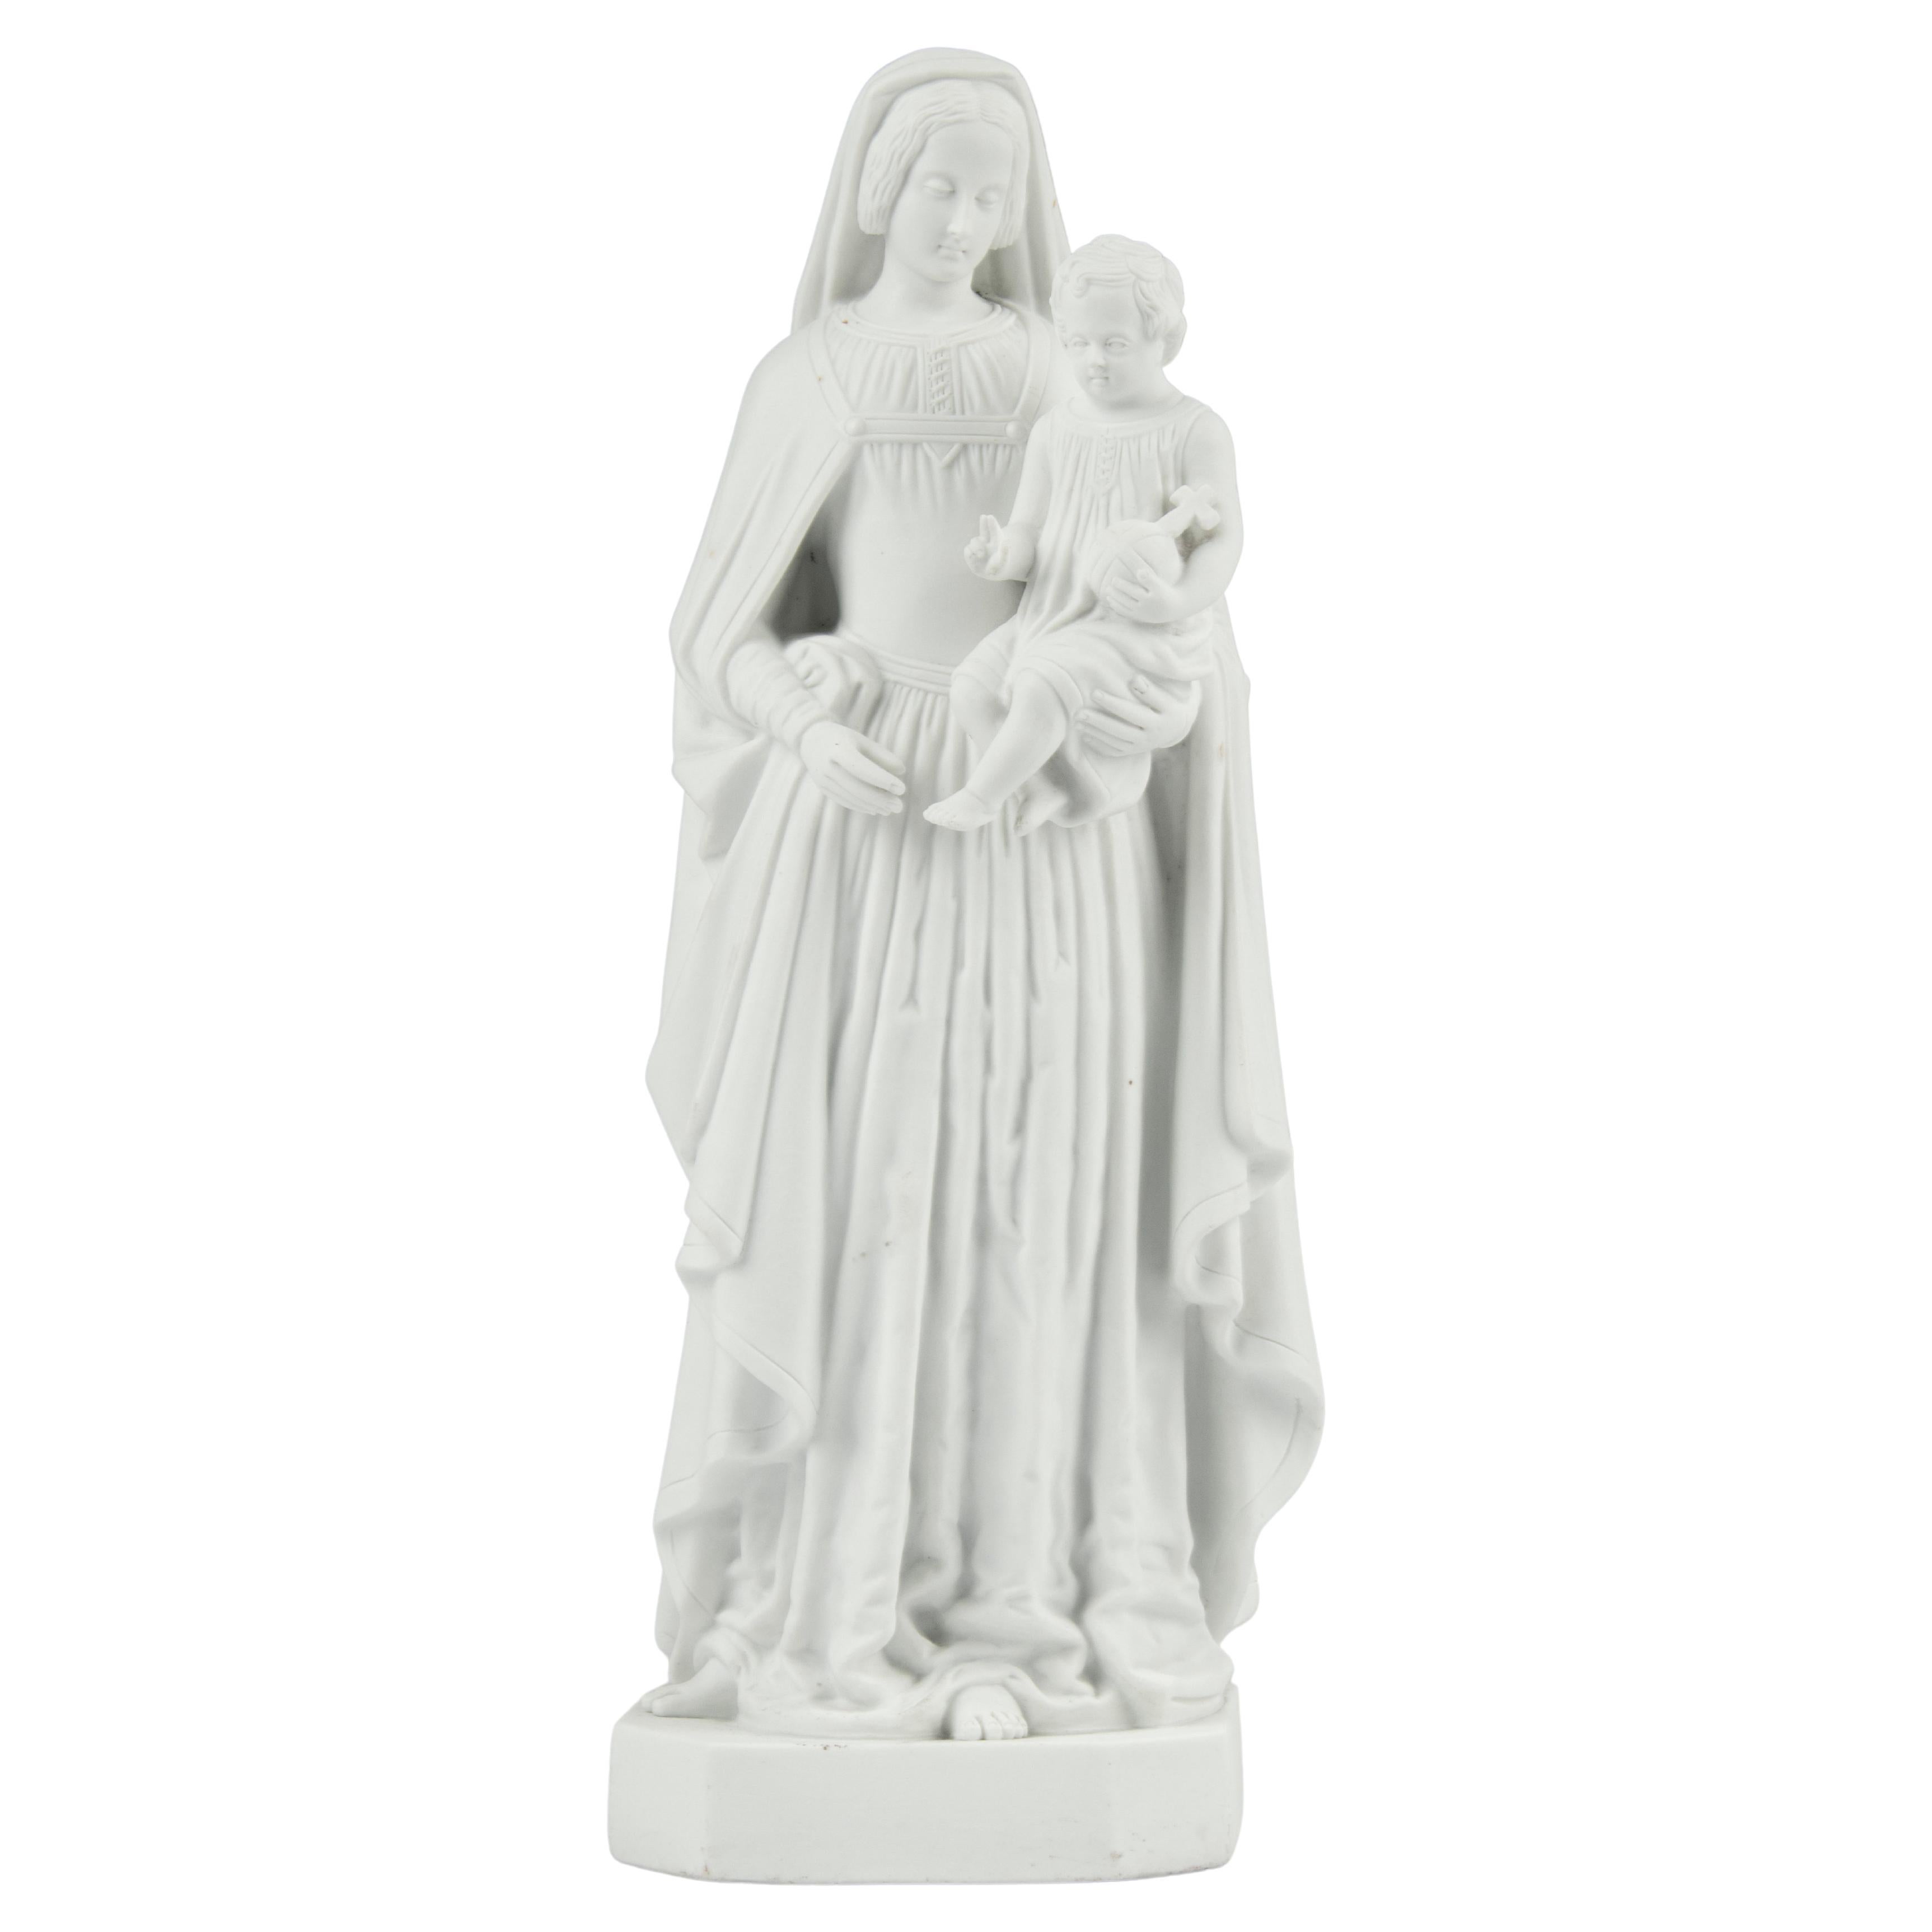 Escultura de María con el Niño Jesús de porcelana bizcochada de finales del siglo XIX